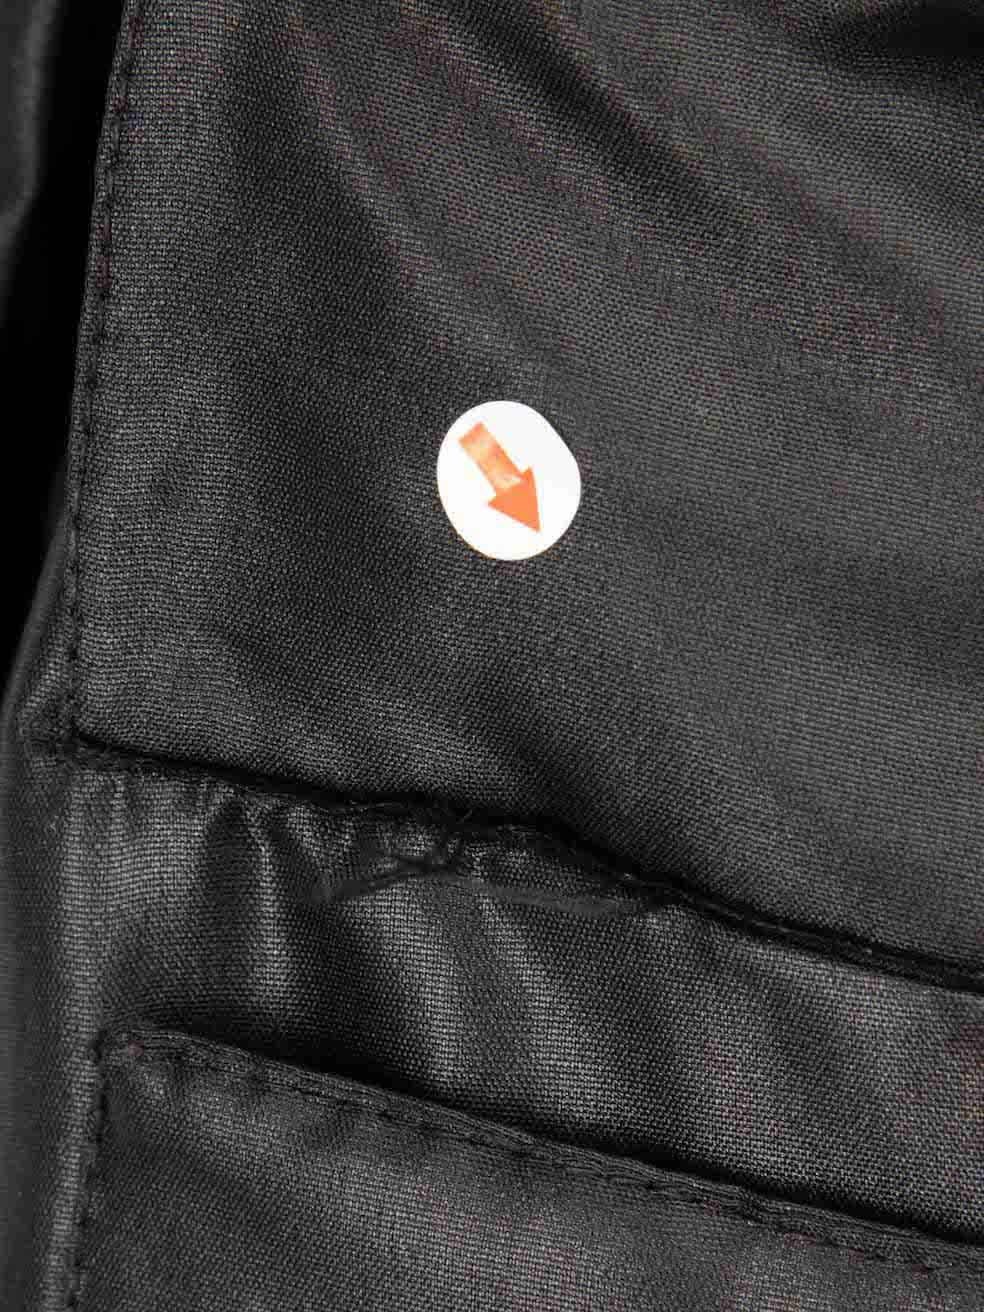 Sonia Rykiel Black Logo Patch Bomber Jacket Size XL 4